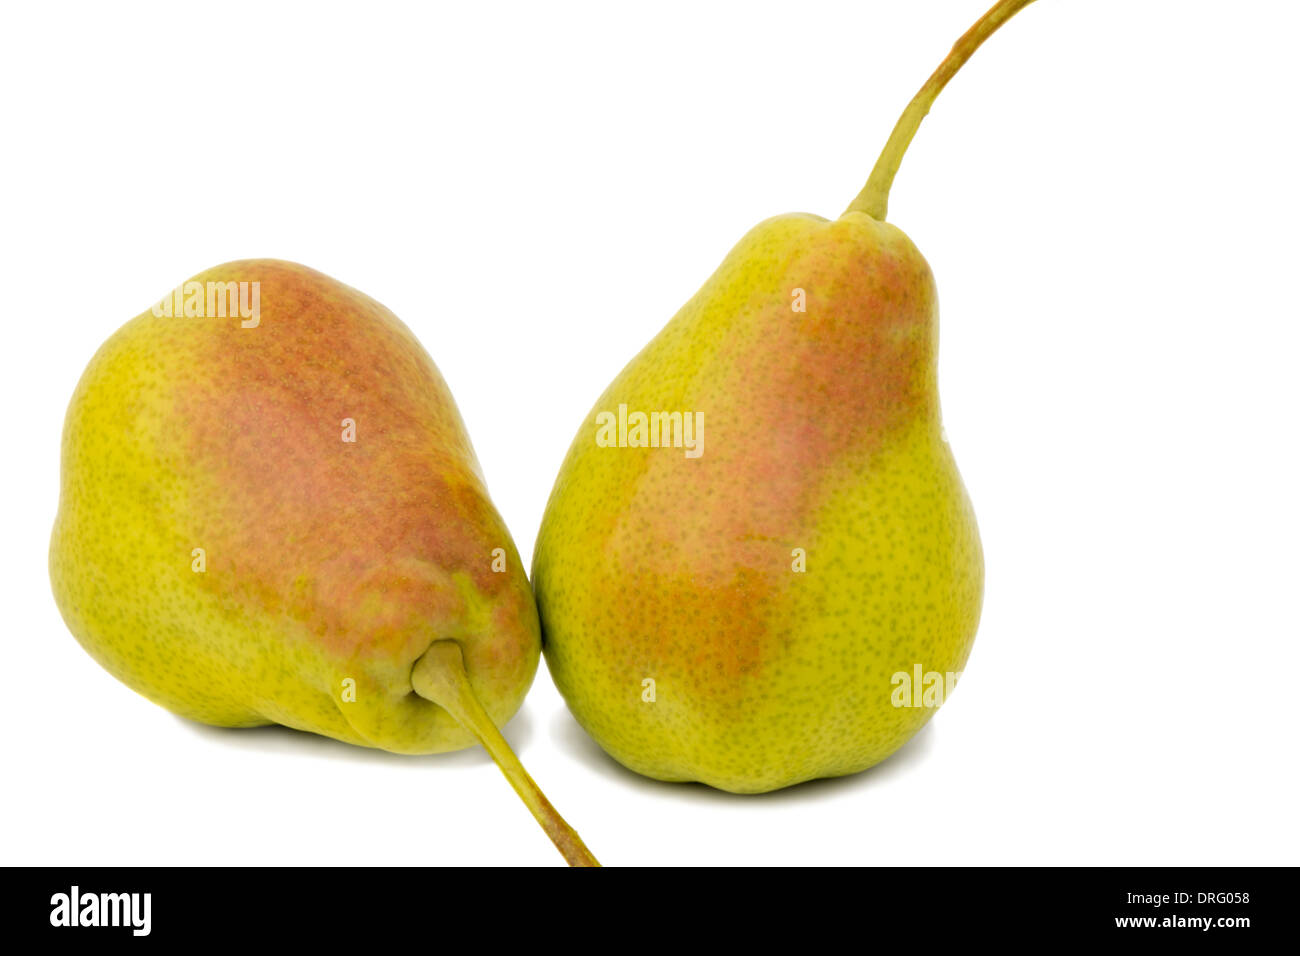 Due mature grande giallo pere. Presentato su uno sfondo bianco. Foto Stock